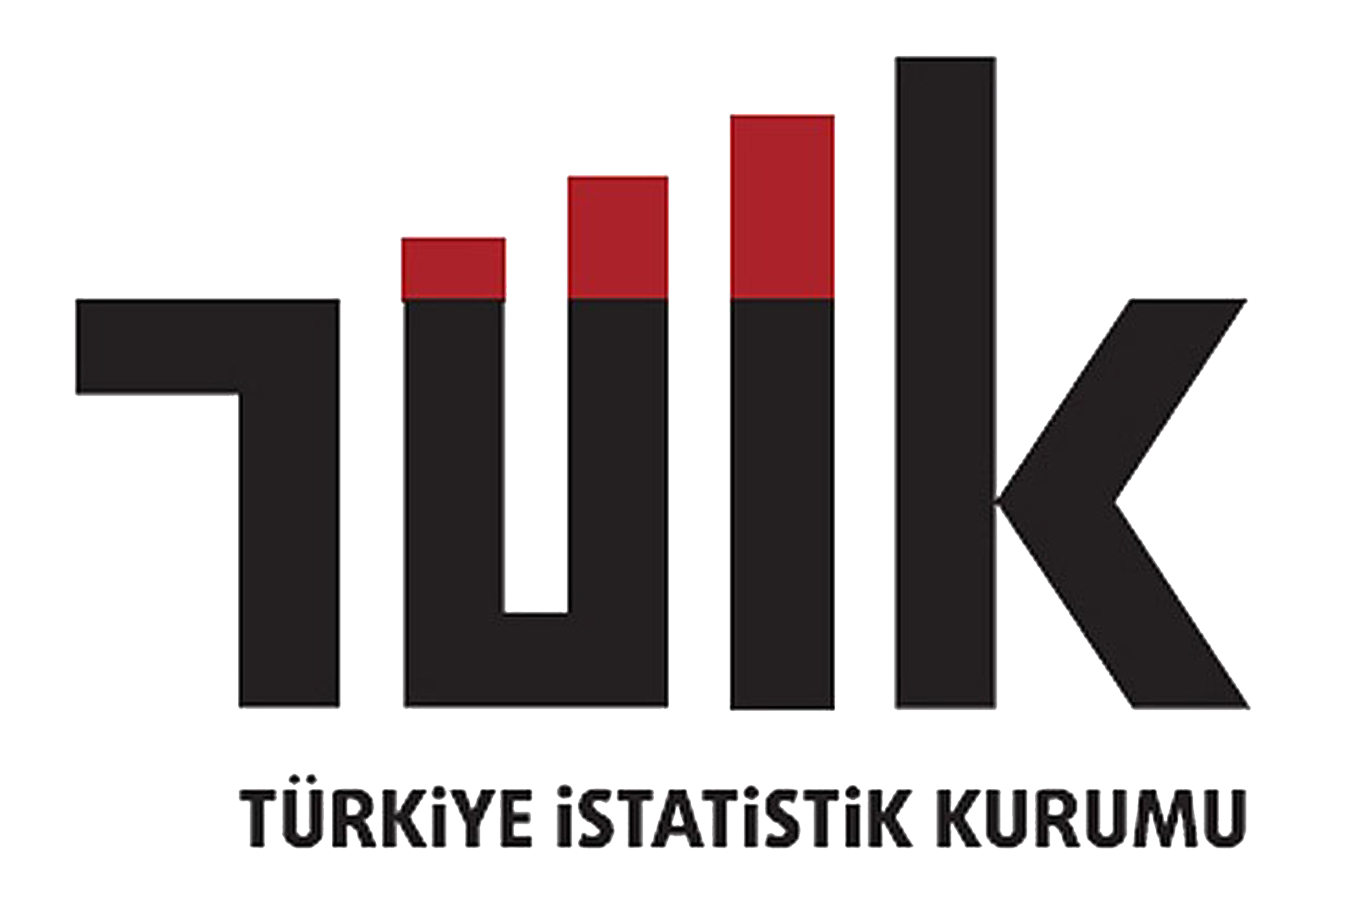 TÜİK logo